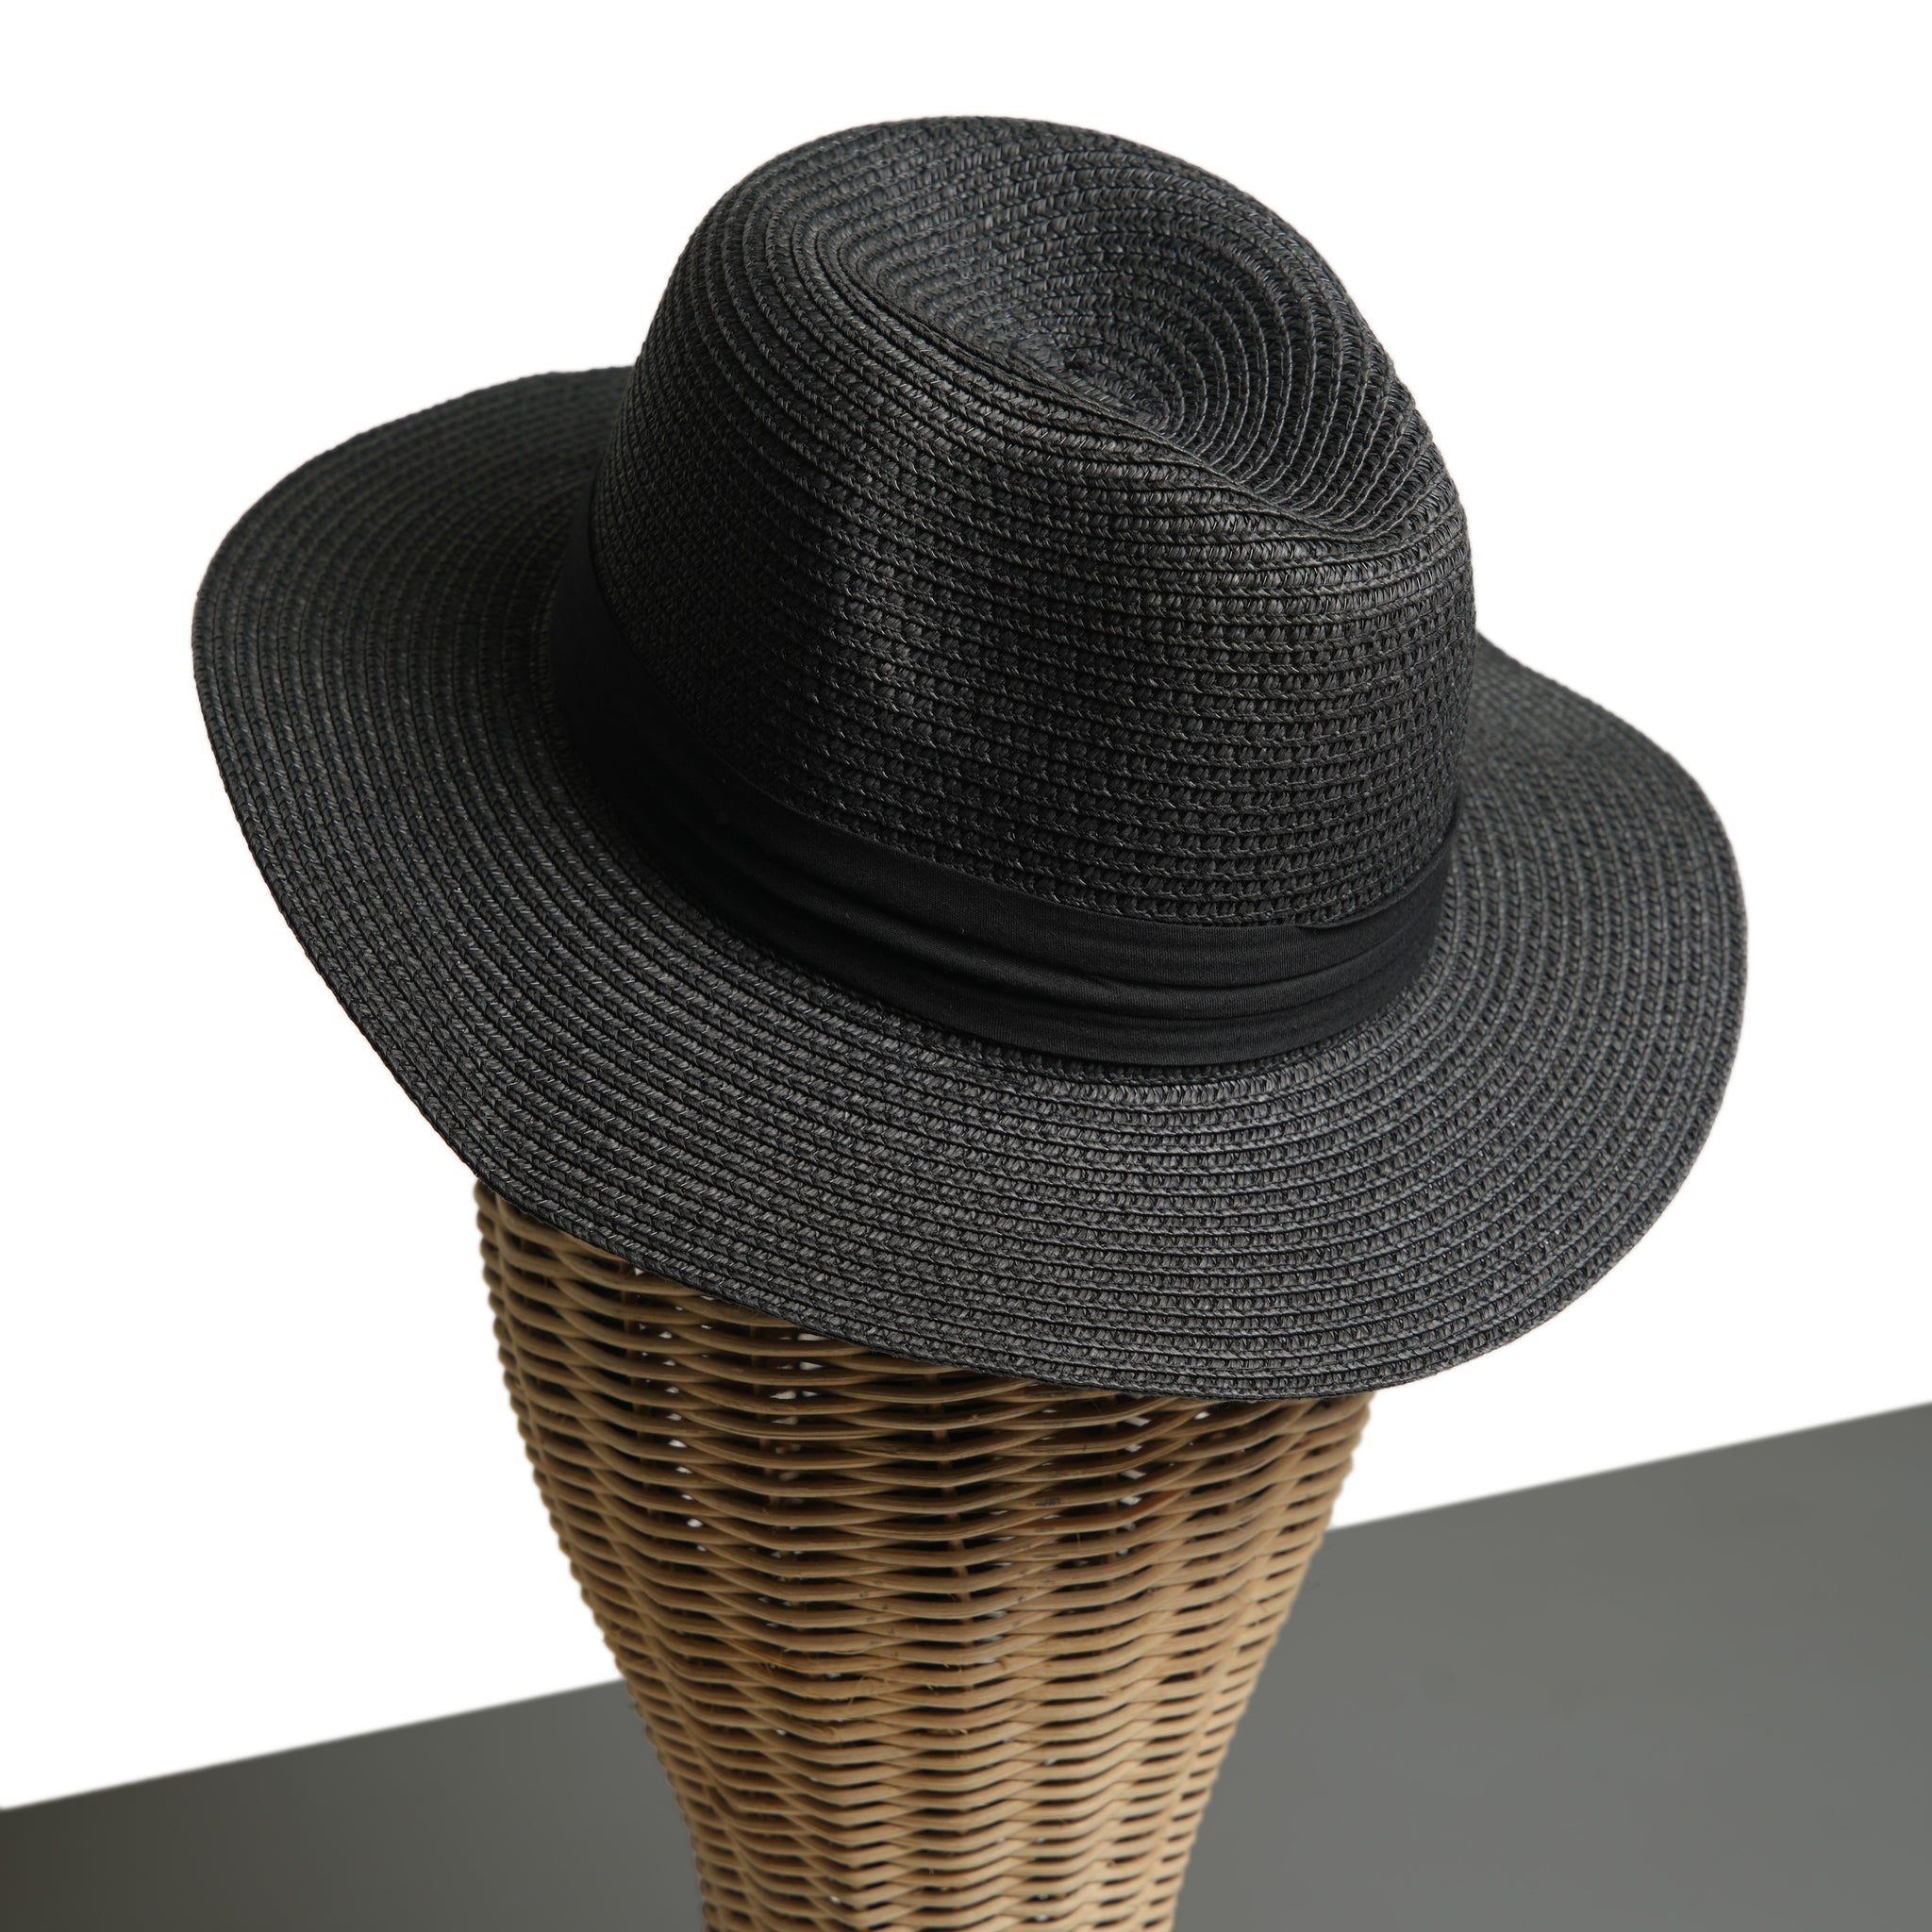 Chokore Summer Straw Hat (Black)